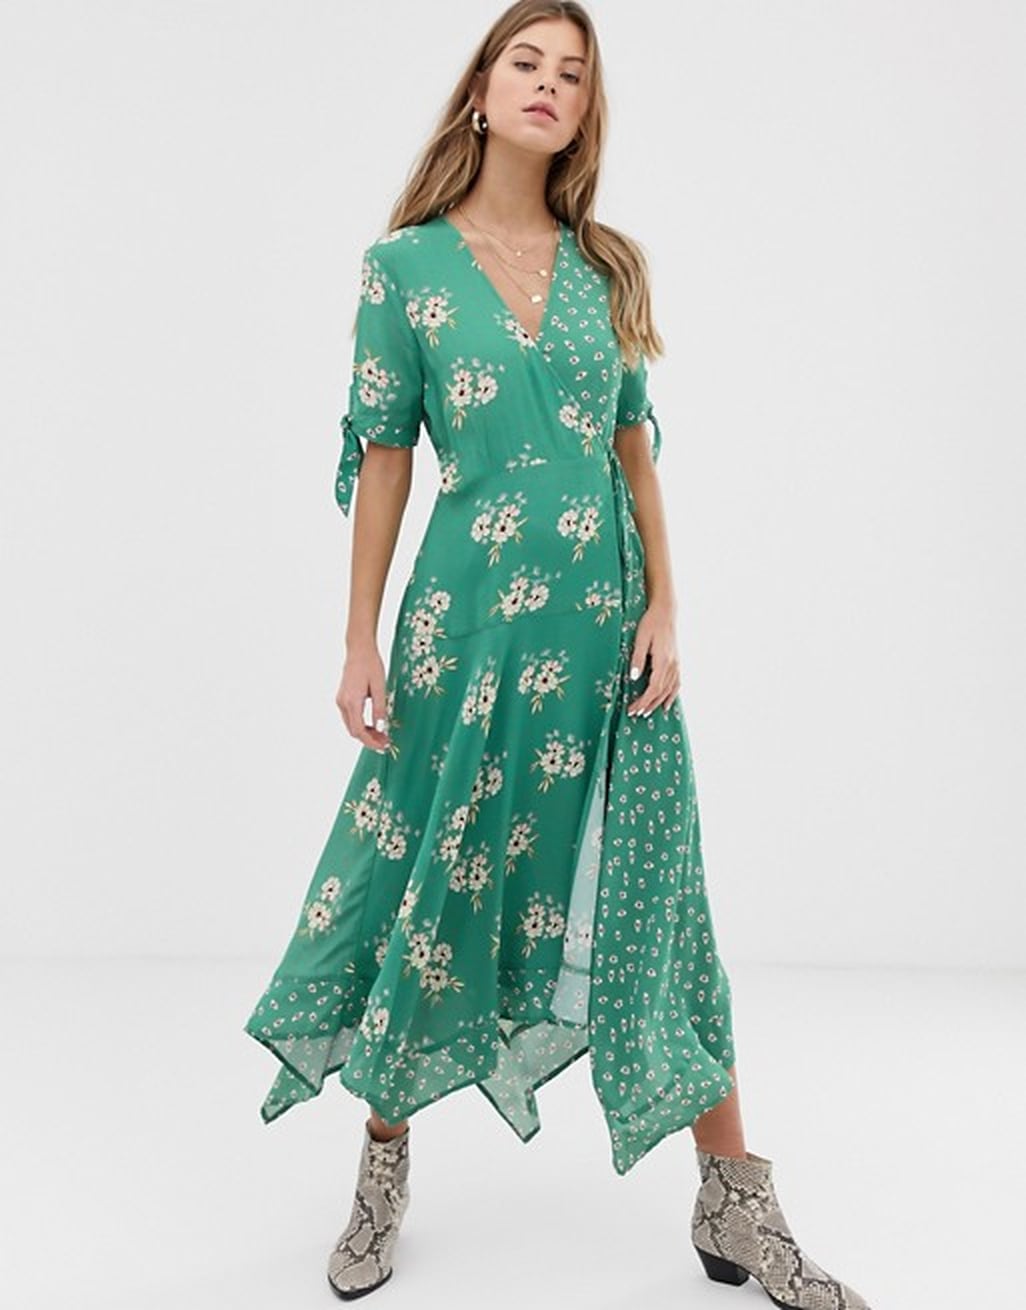 Carole Middleton's Green Dress at Wimbledon 2019 | POPSUGAR Fashion